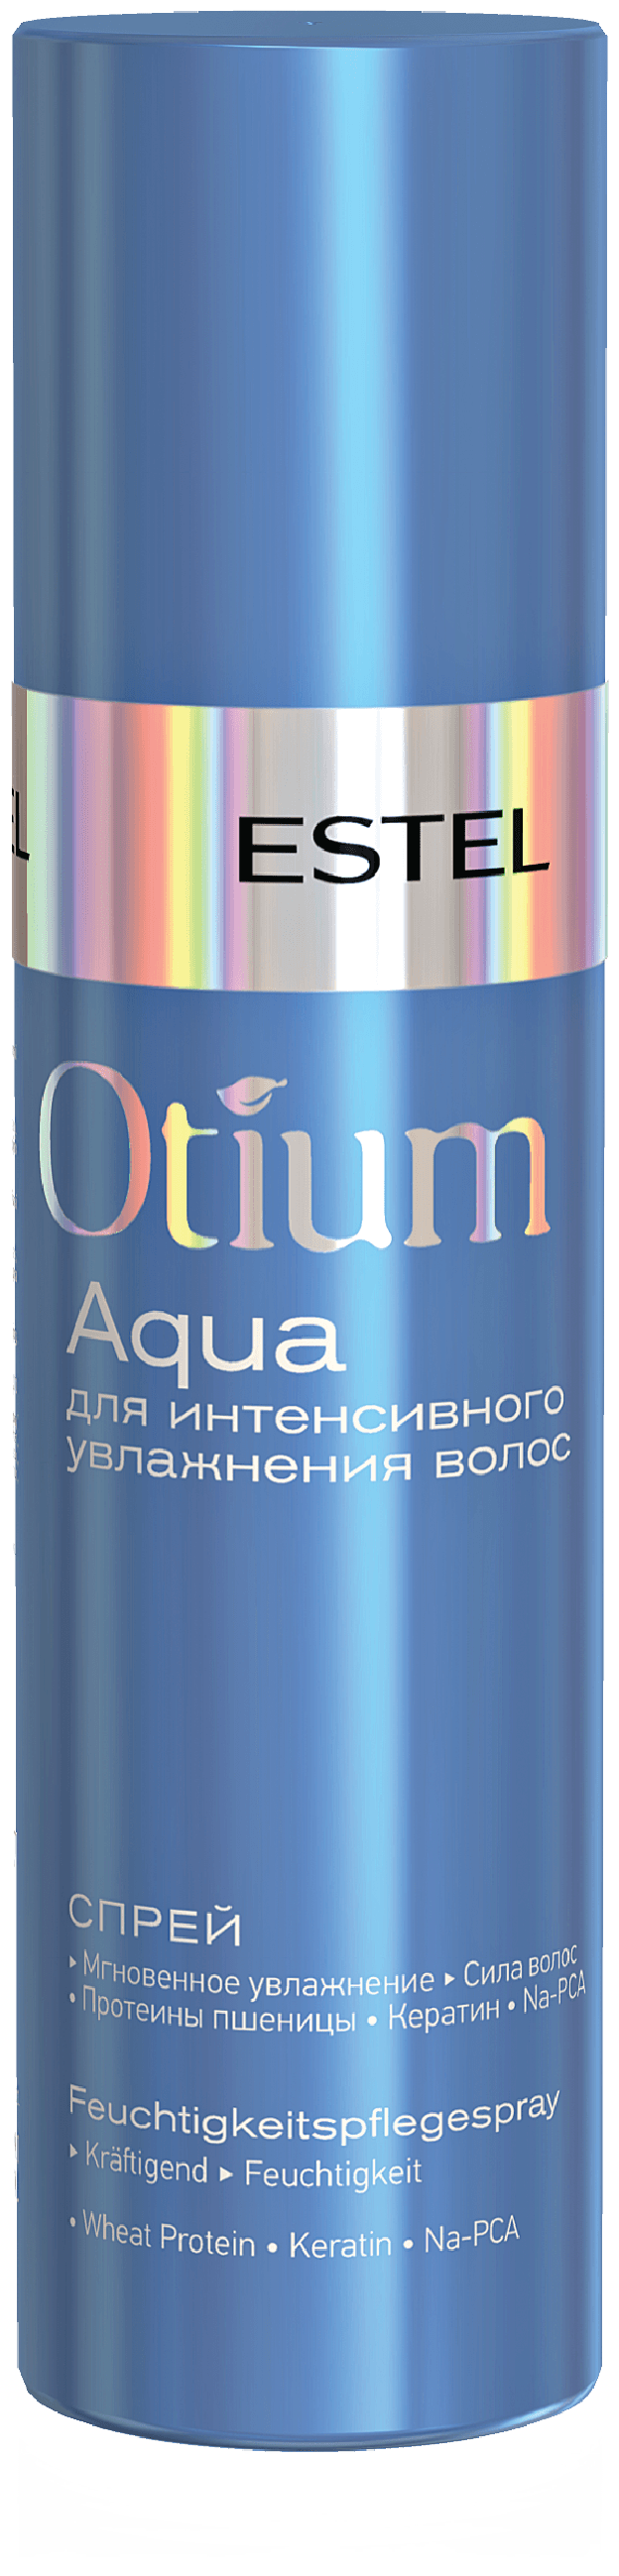 ESTEL Otium Aqua спрей для интенсивного увлажнения волос, 200 г, 200 мл, спрей